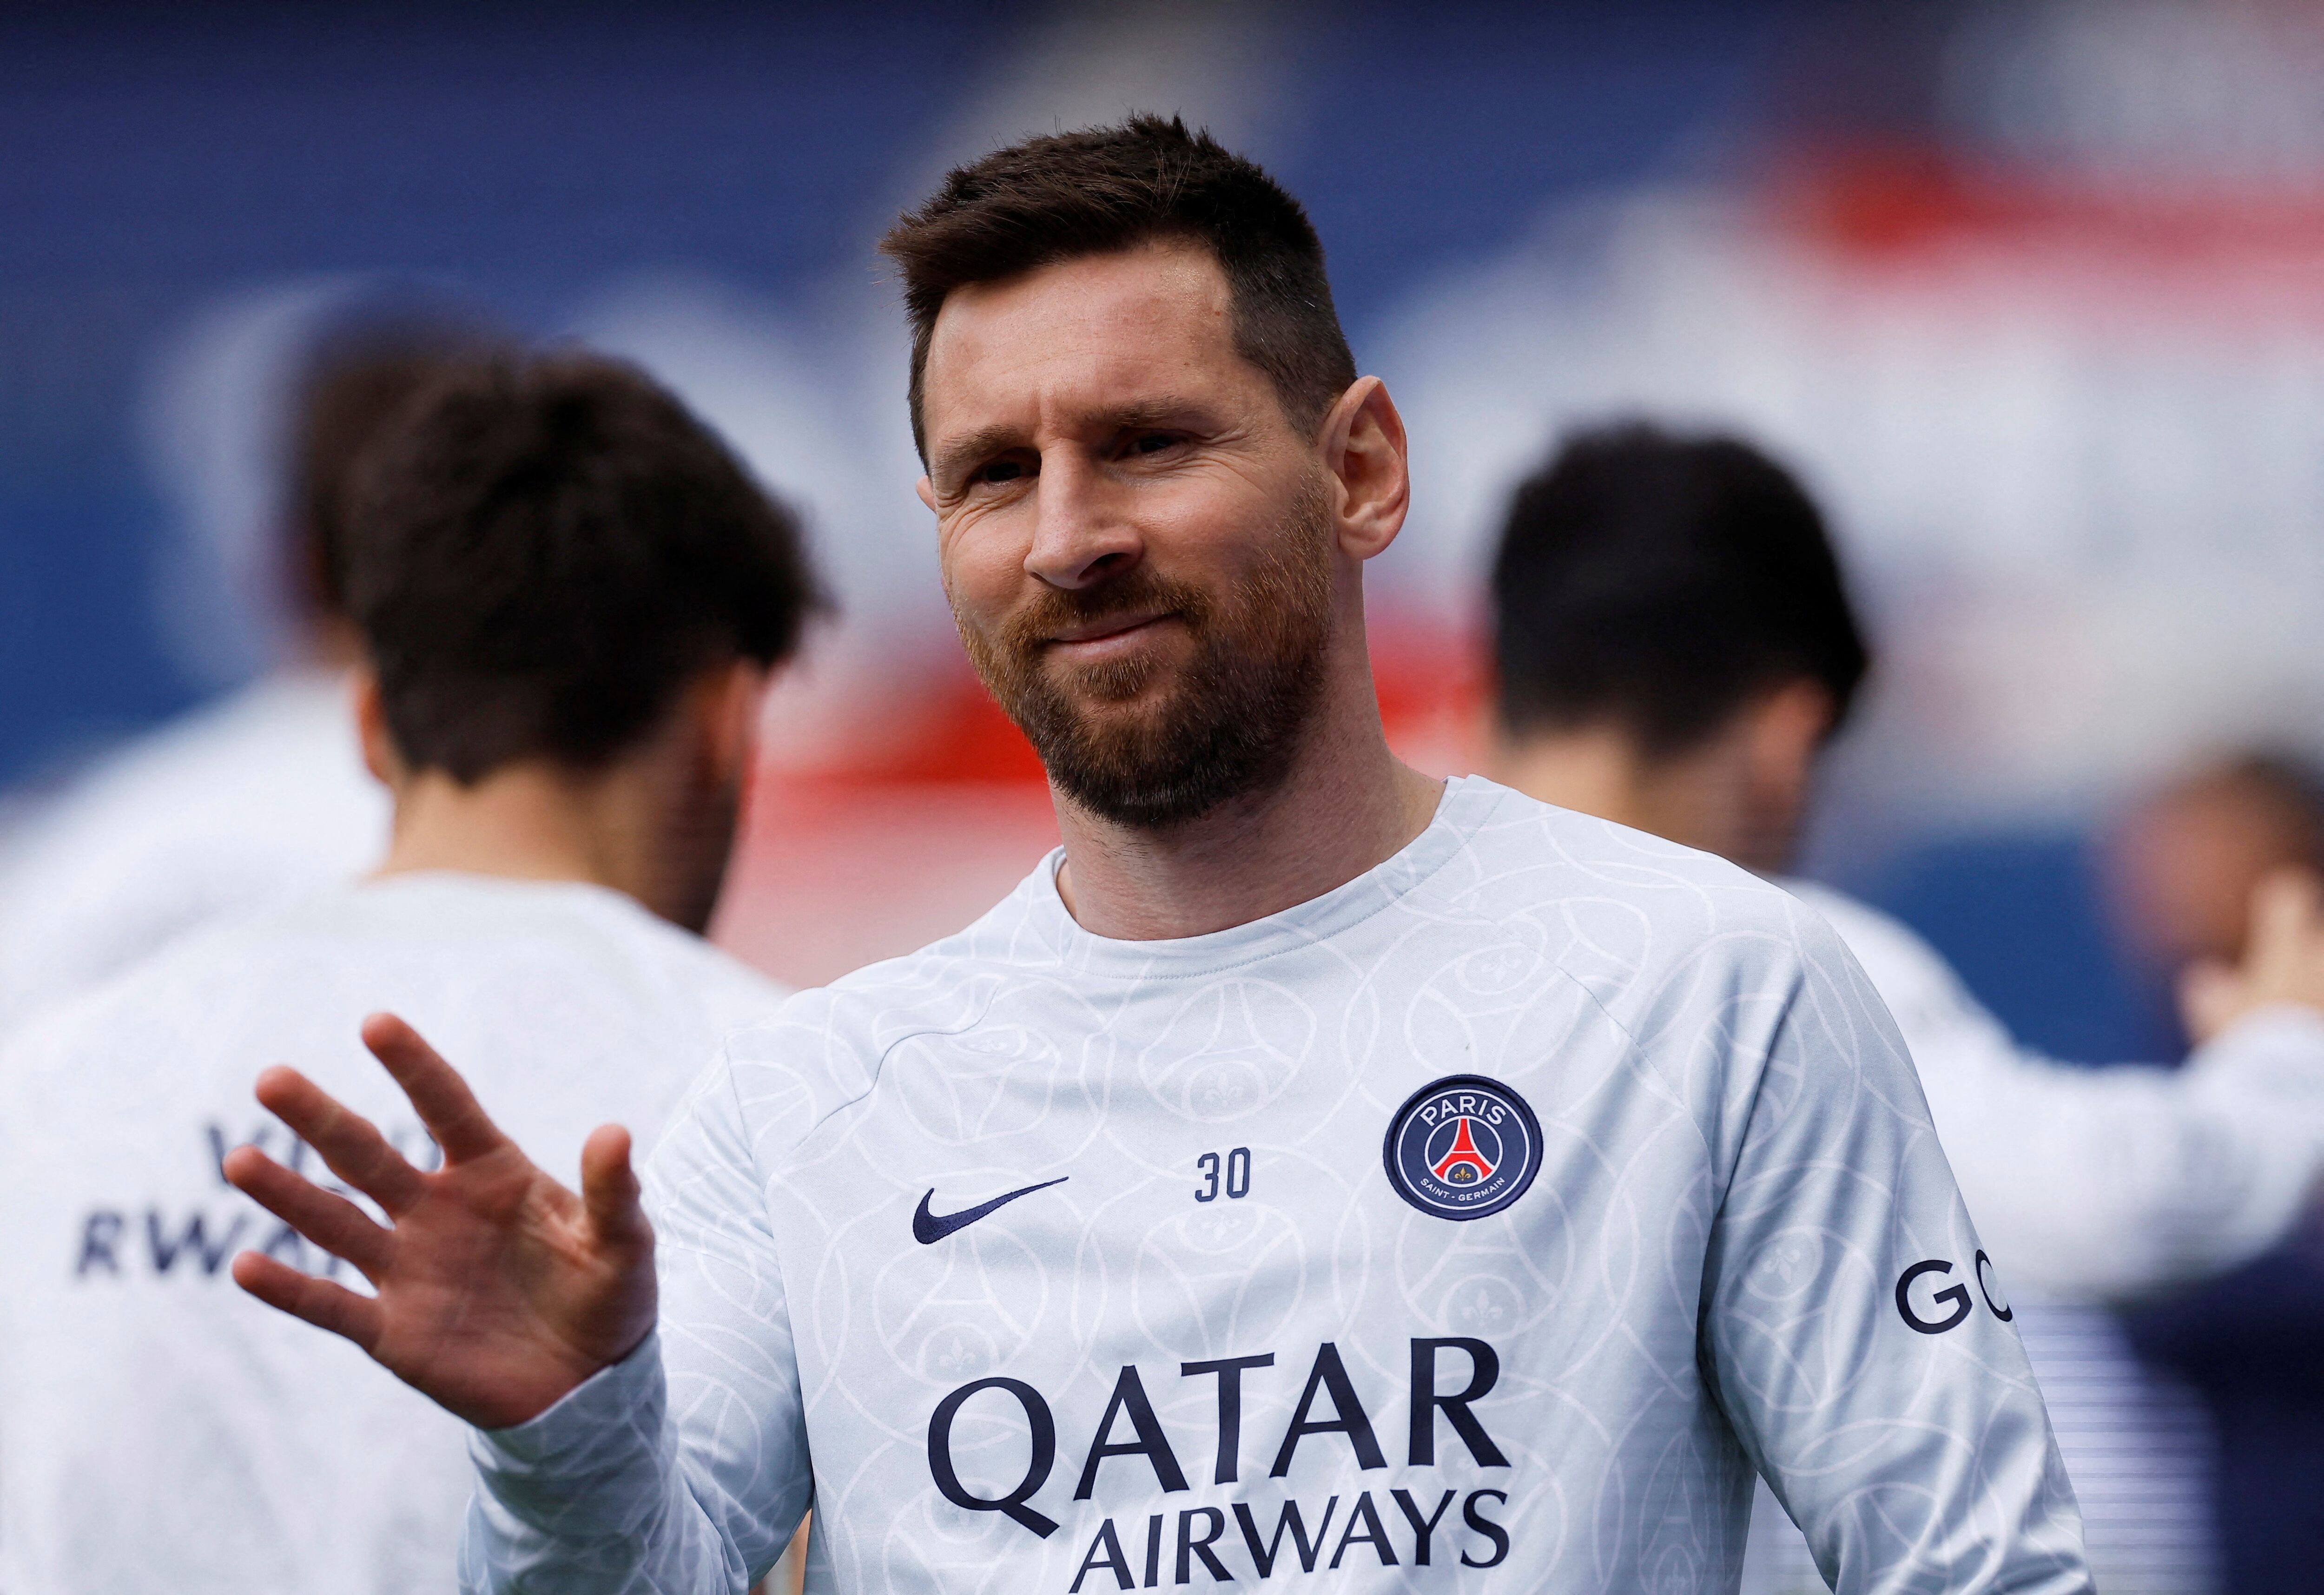 El padre de Messi desmintió un acuerdo con el fútbol de Arabia Saudita (REUTERS/Christian Hartmann/File Photo)